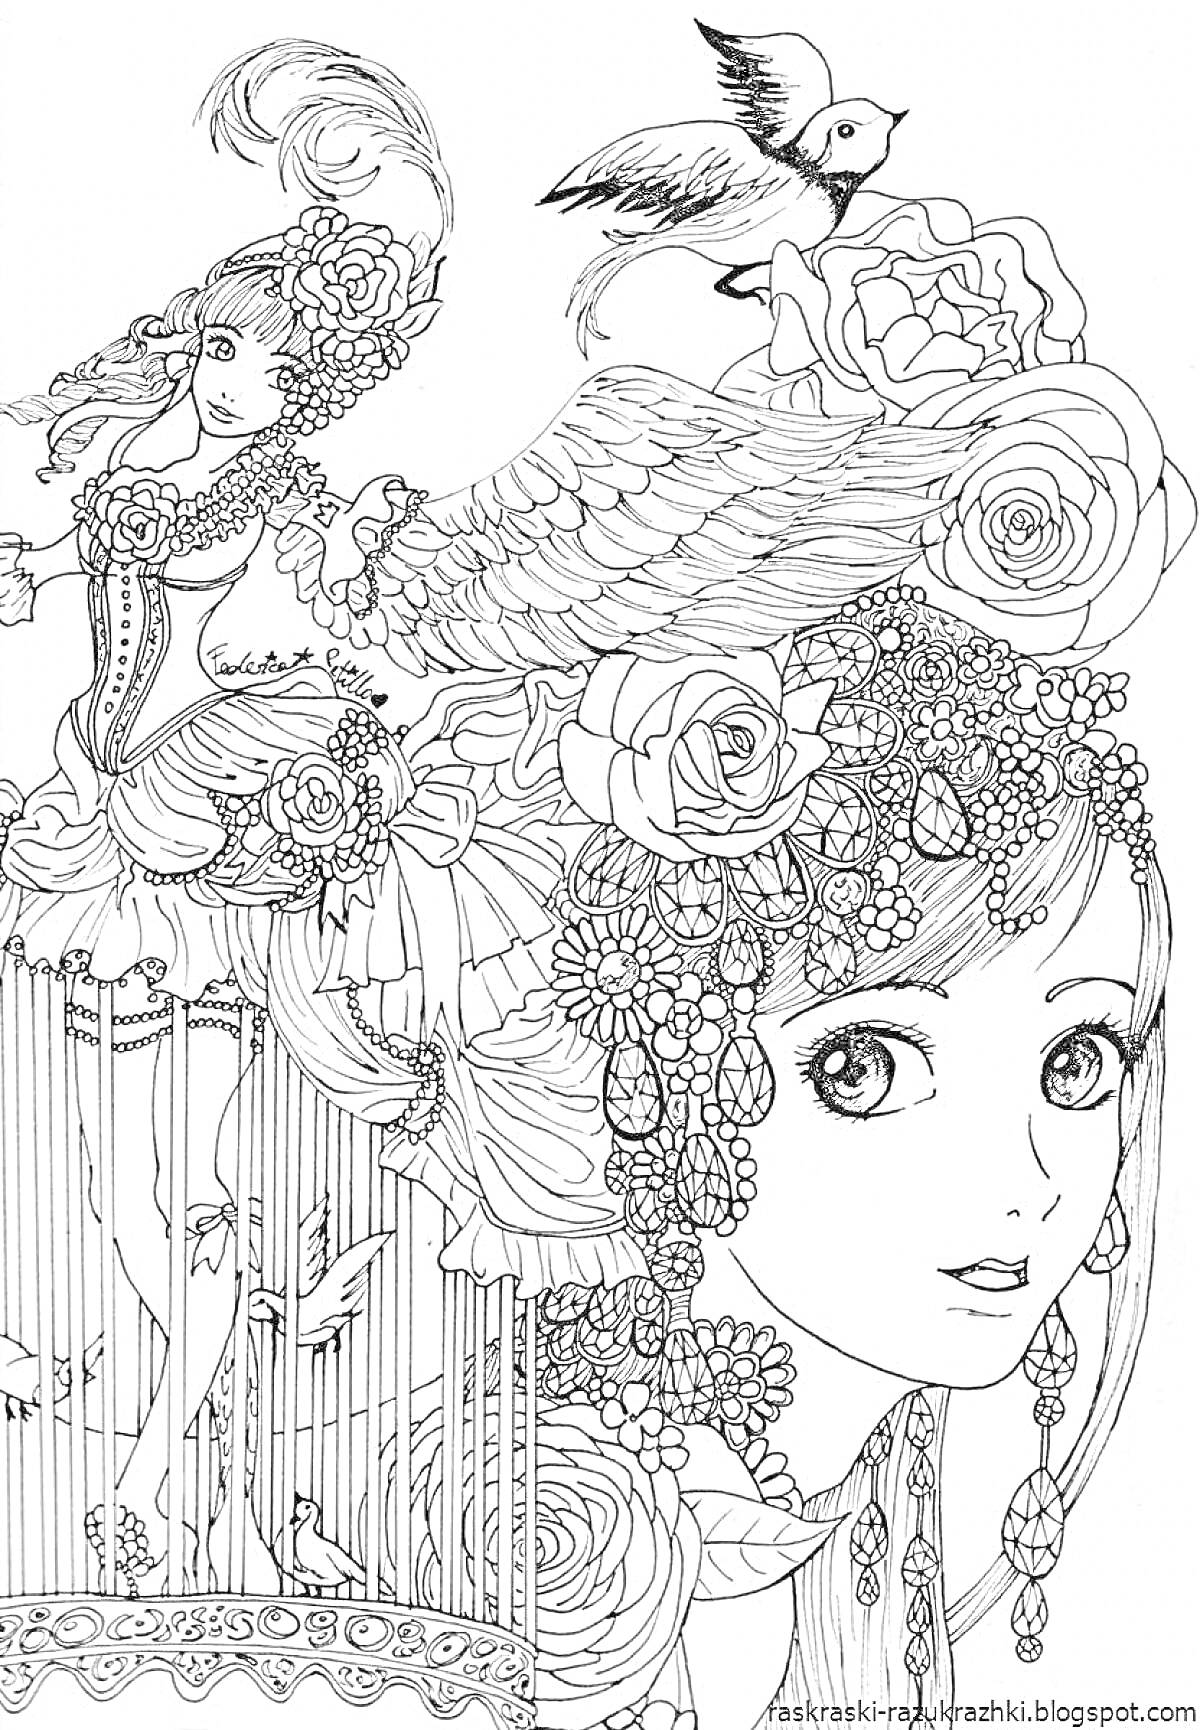 Раскраска Девочка с цветами и птицами в клетке, элементы: девушка с крыльями, большие цветы на голове, птица в полете, птичья клетка, множество мелких декоративных элементов